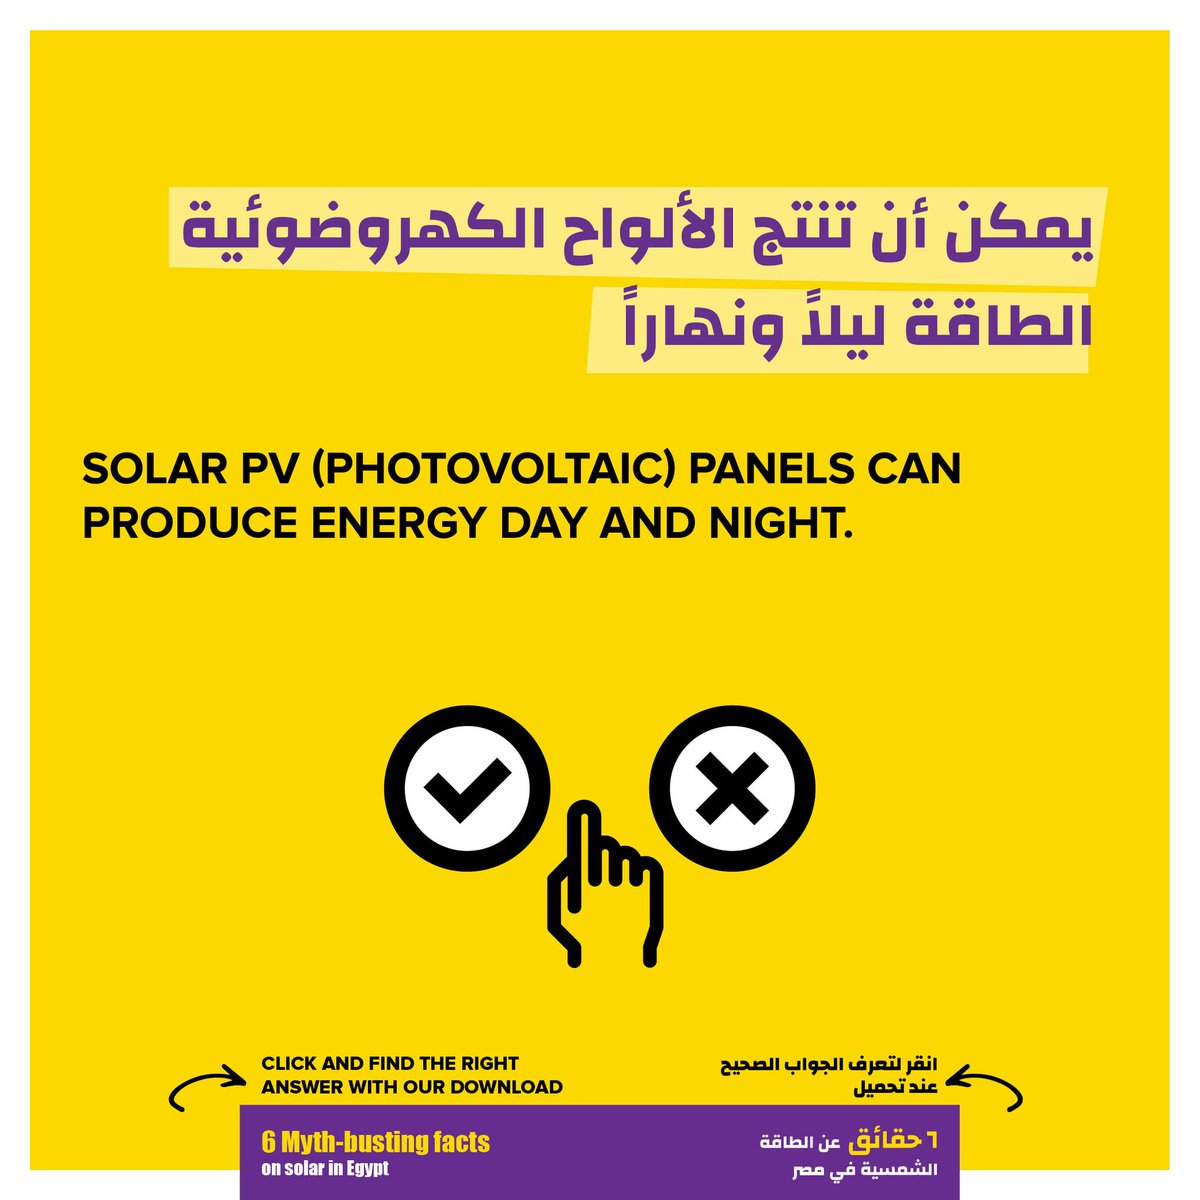 هل بإمكان الألواح الخاصة بالطاقة الشمسية إنتاج الطاقة ليلاً ونهاراً؟ هل اضغط/ي على الرابط لمعرفة الجواب الصحيح bit.ly/3xFdXNs